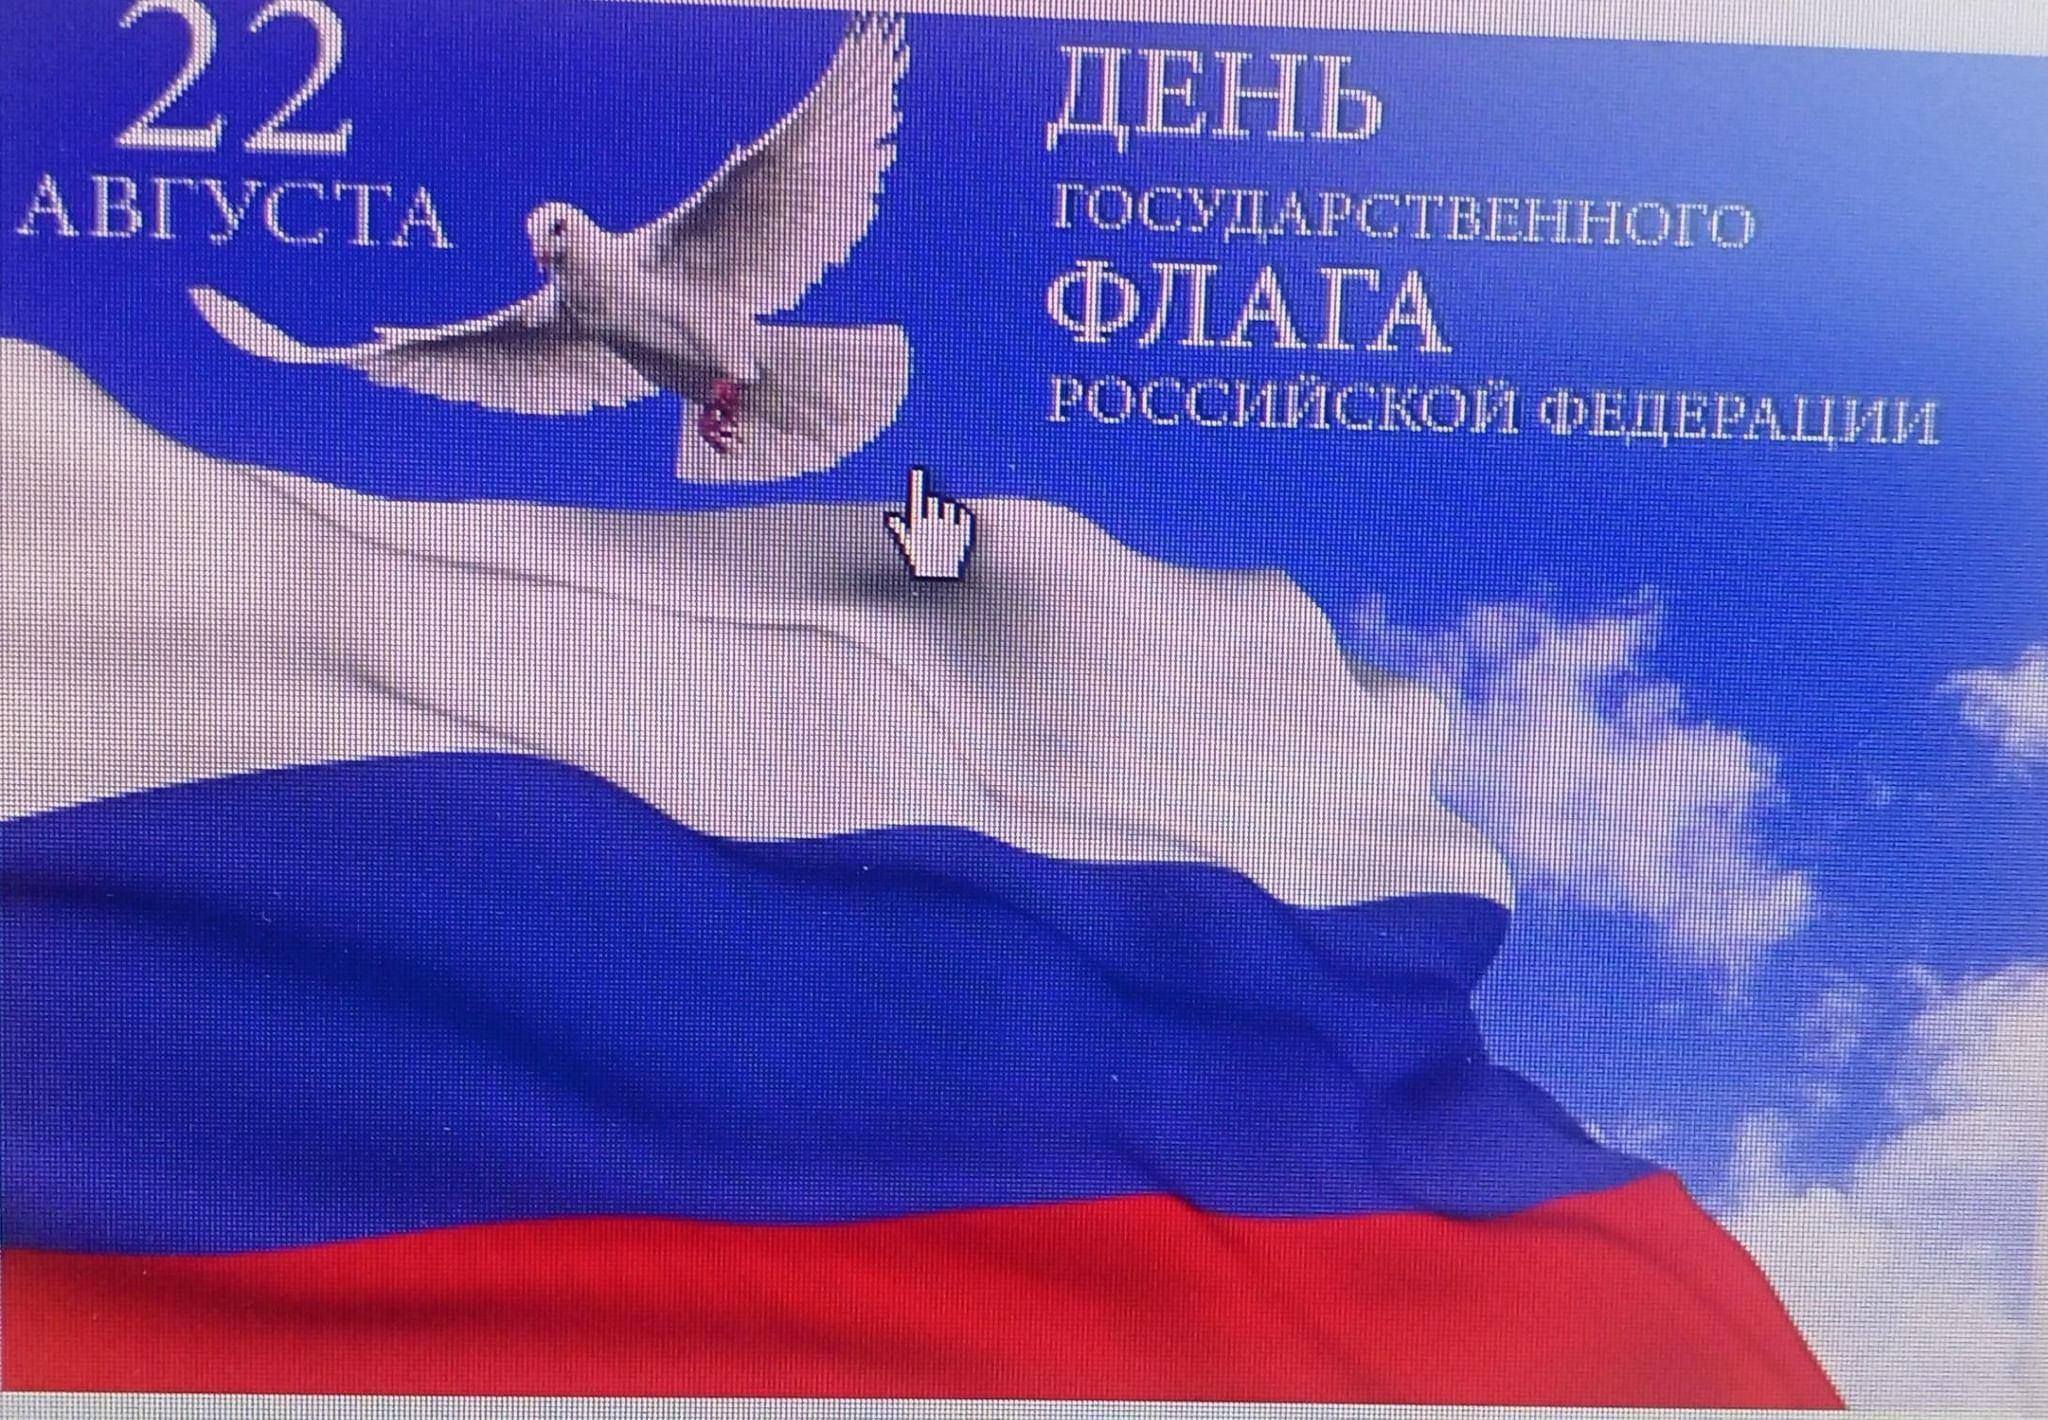 День государственного флага России 2022